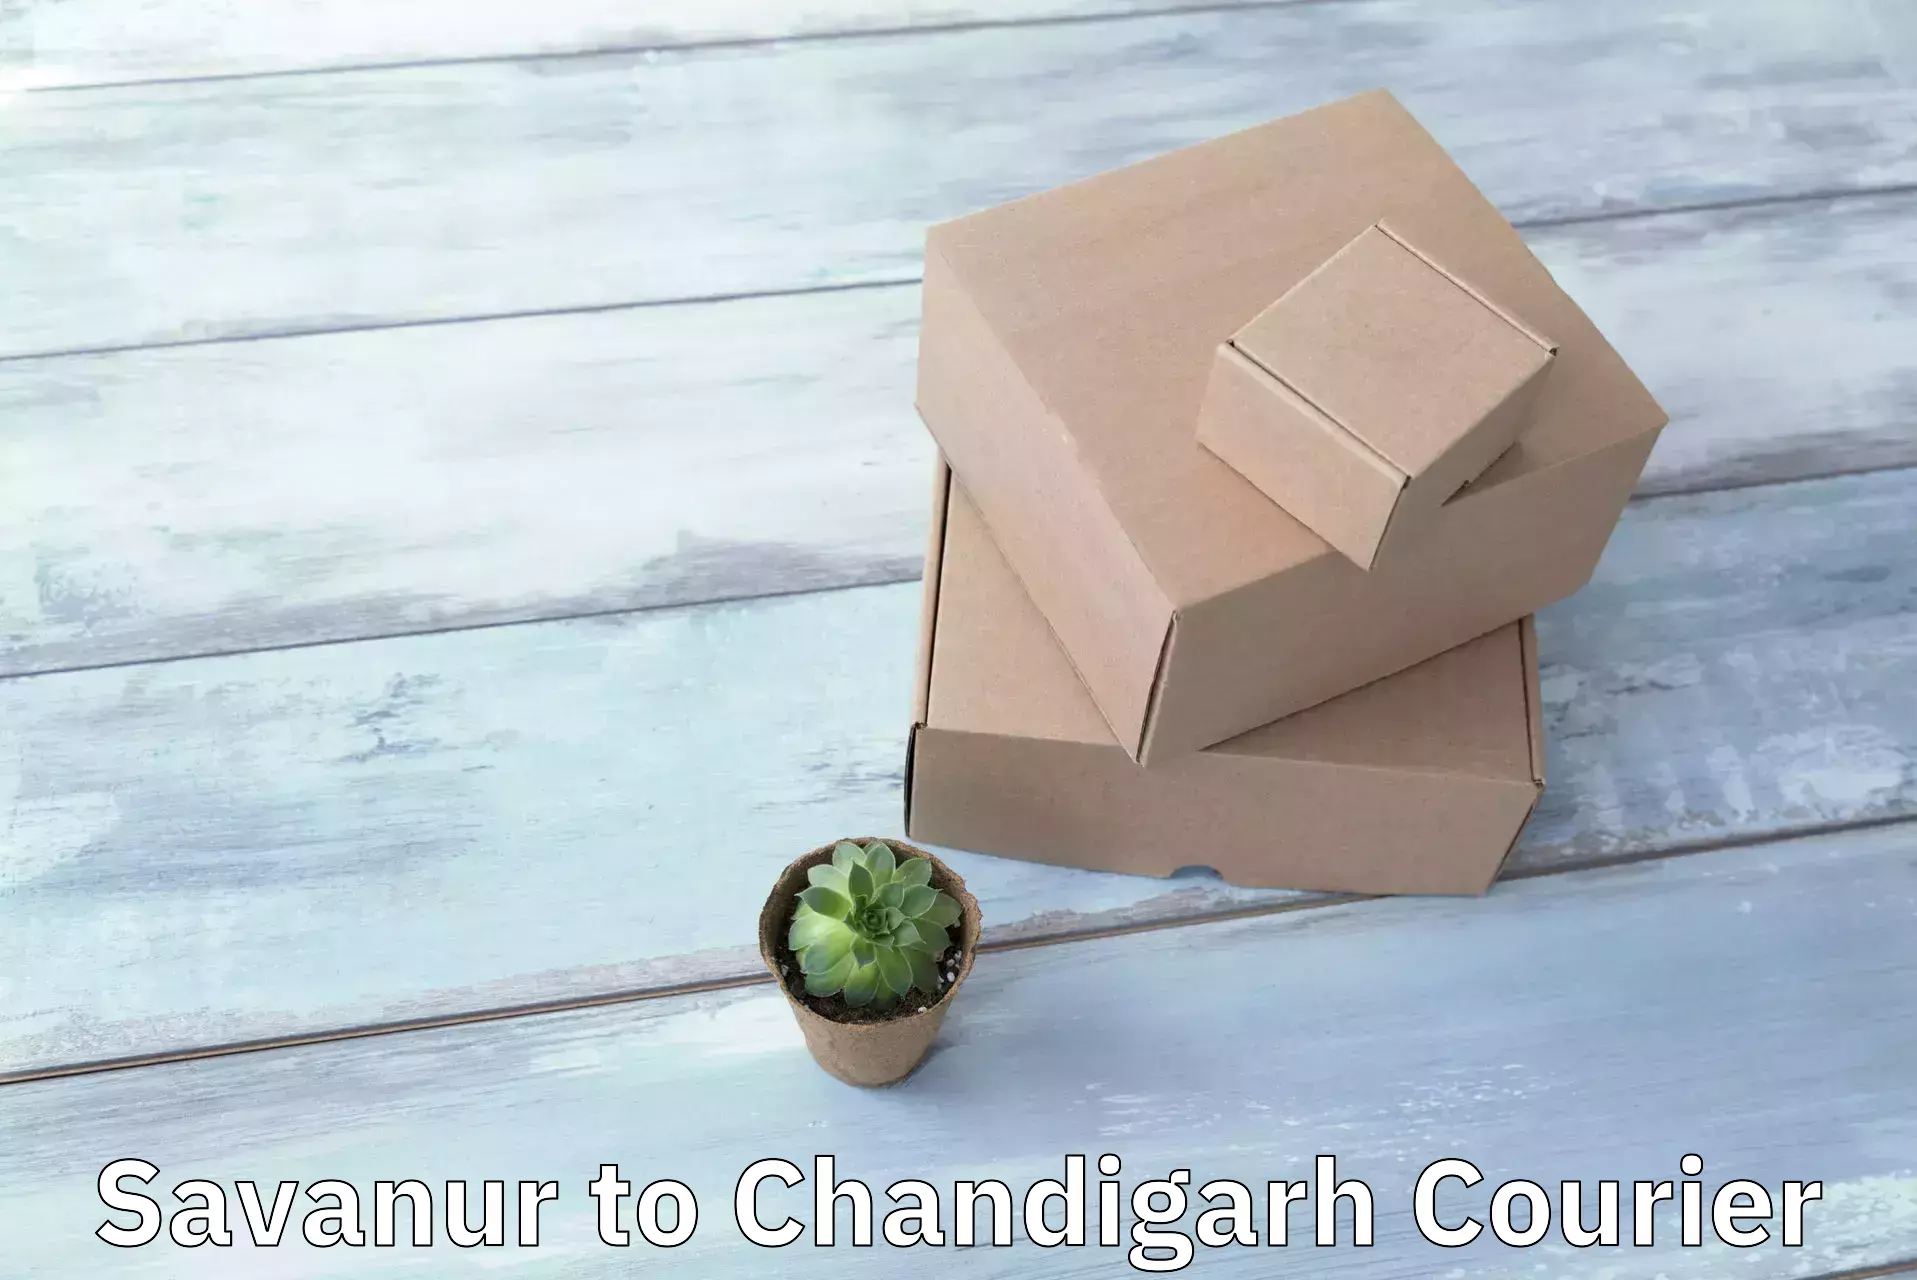 International parcel service Savanur to Chandigarh